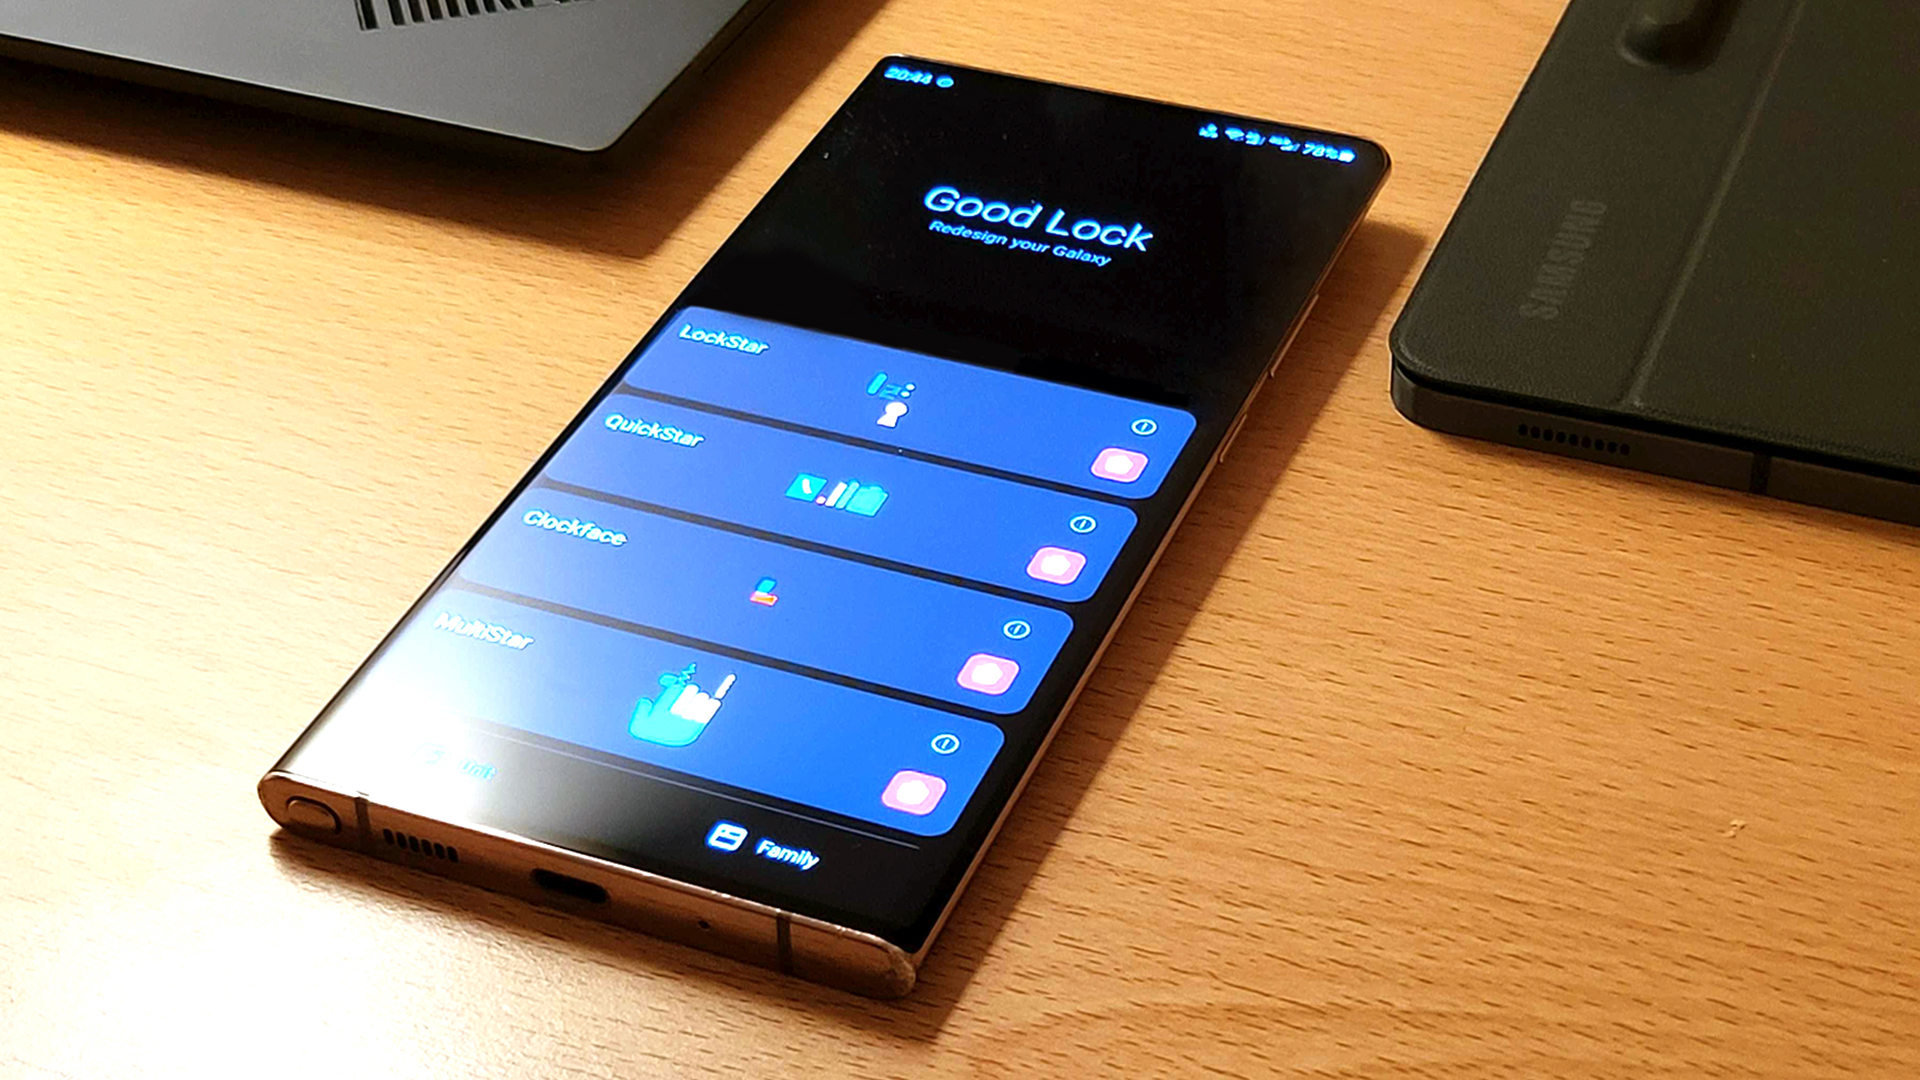 Una foto de un Samsung Note 20 Ultra en una mesa, ejecutando la aplicación Good Lock de Samsung